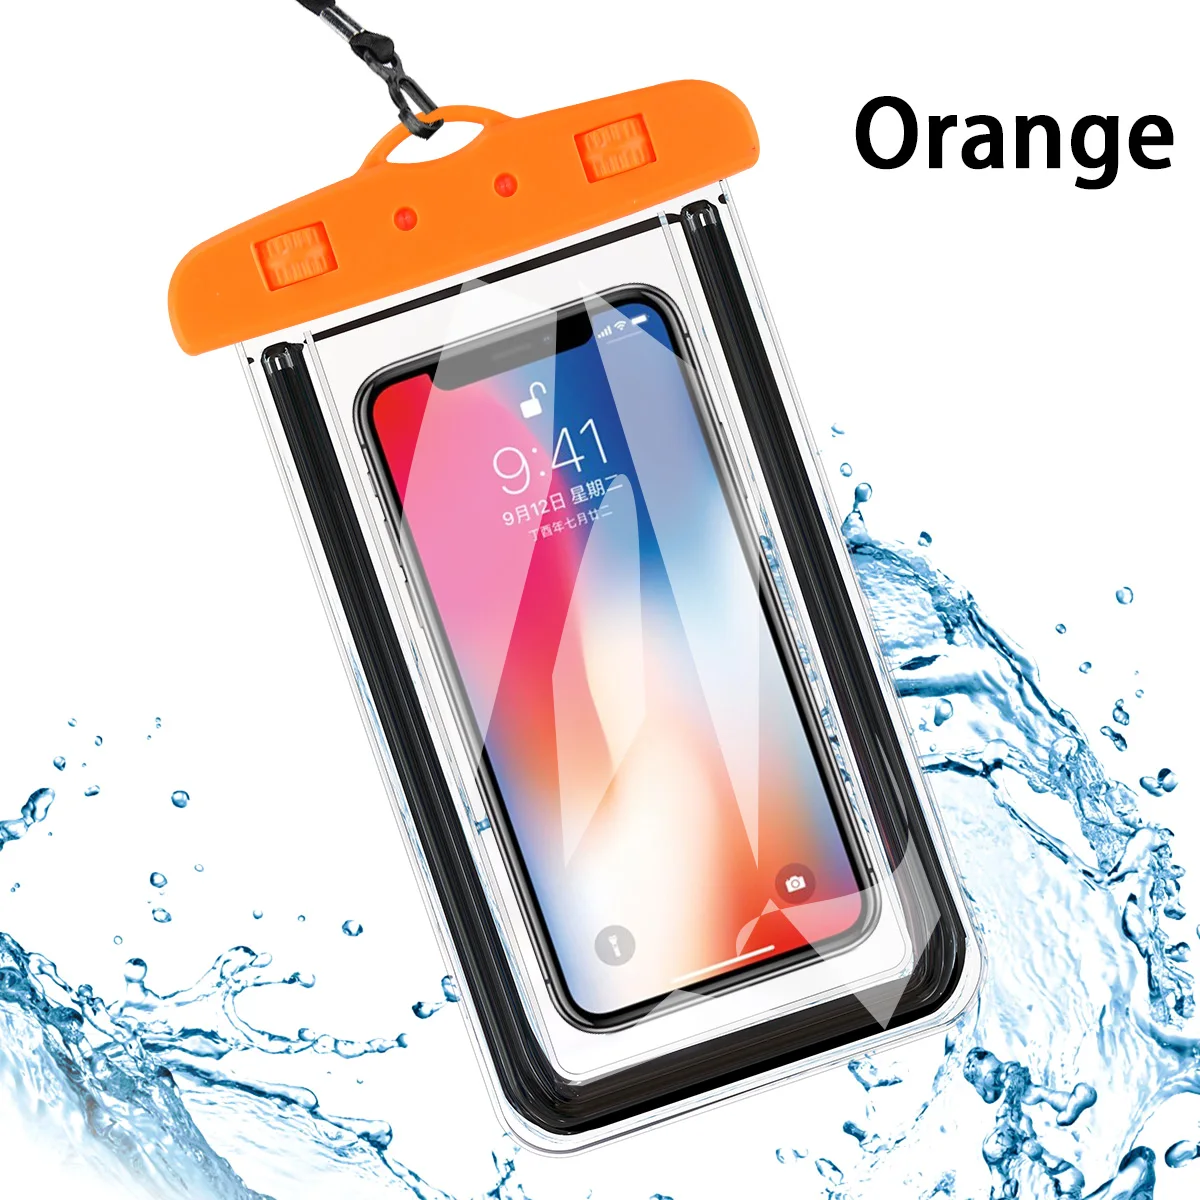 Светящийся водонепроницаемый чехол для телефона прозрачный ПВХ герметичный подводный сотовый смартфон плавательный Чехол Подушка безопасности плавающие сумки Горячая Распродажа - Цвет: Оранжевый